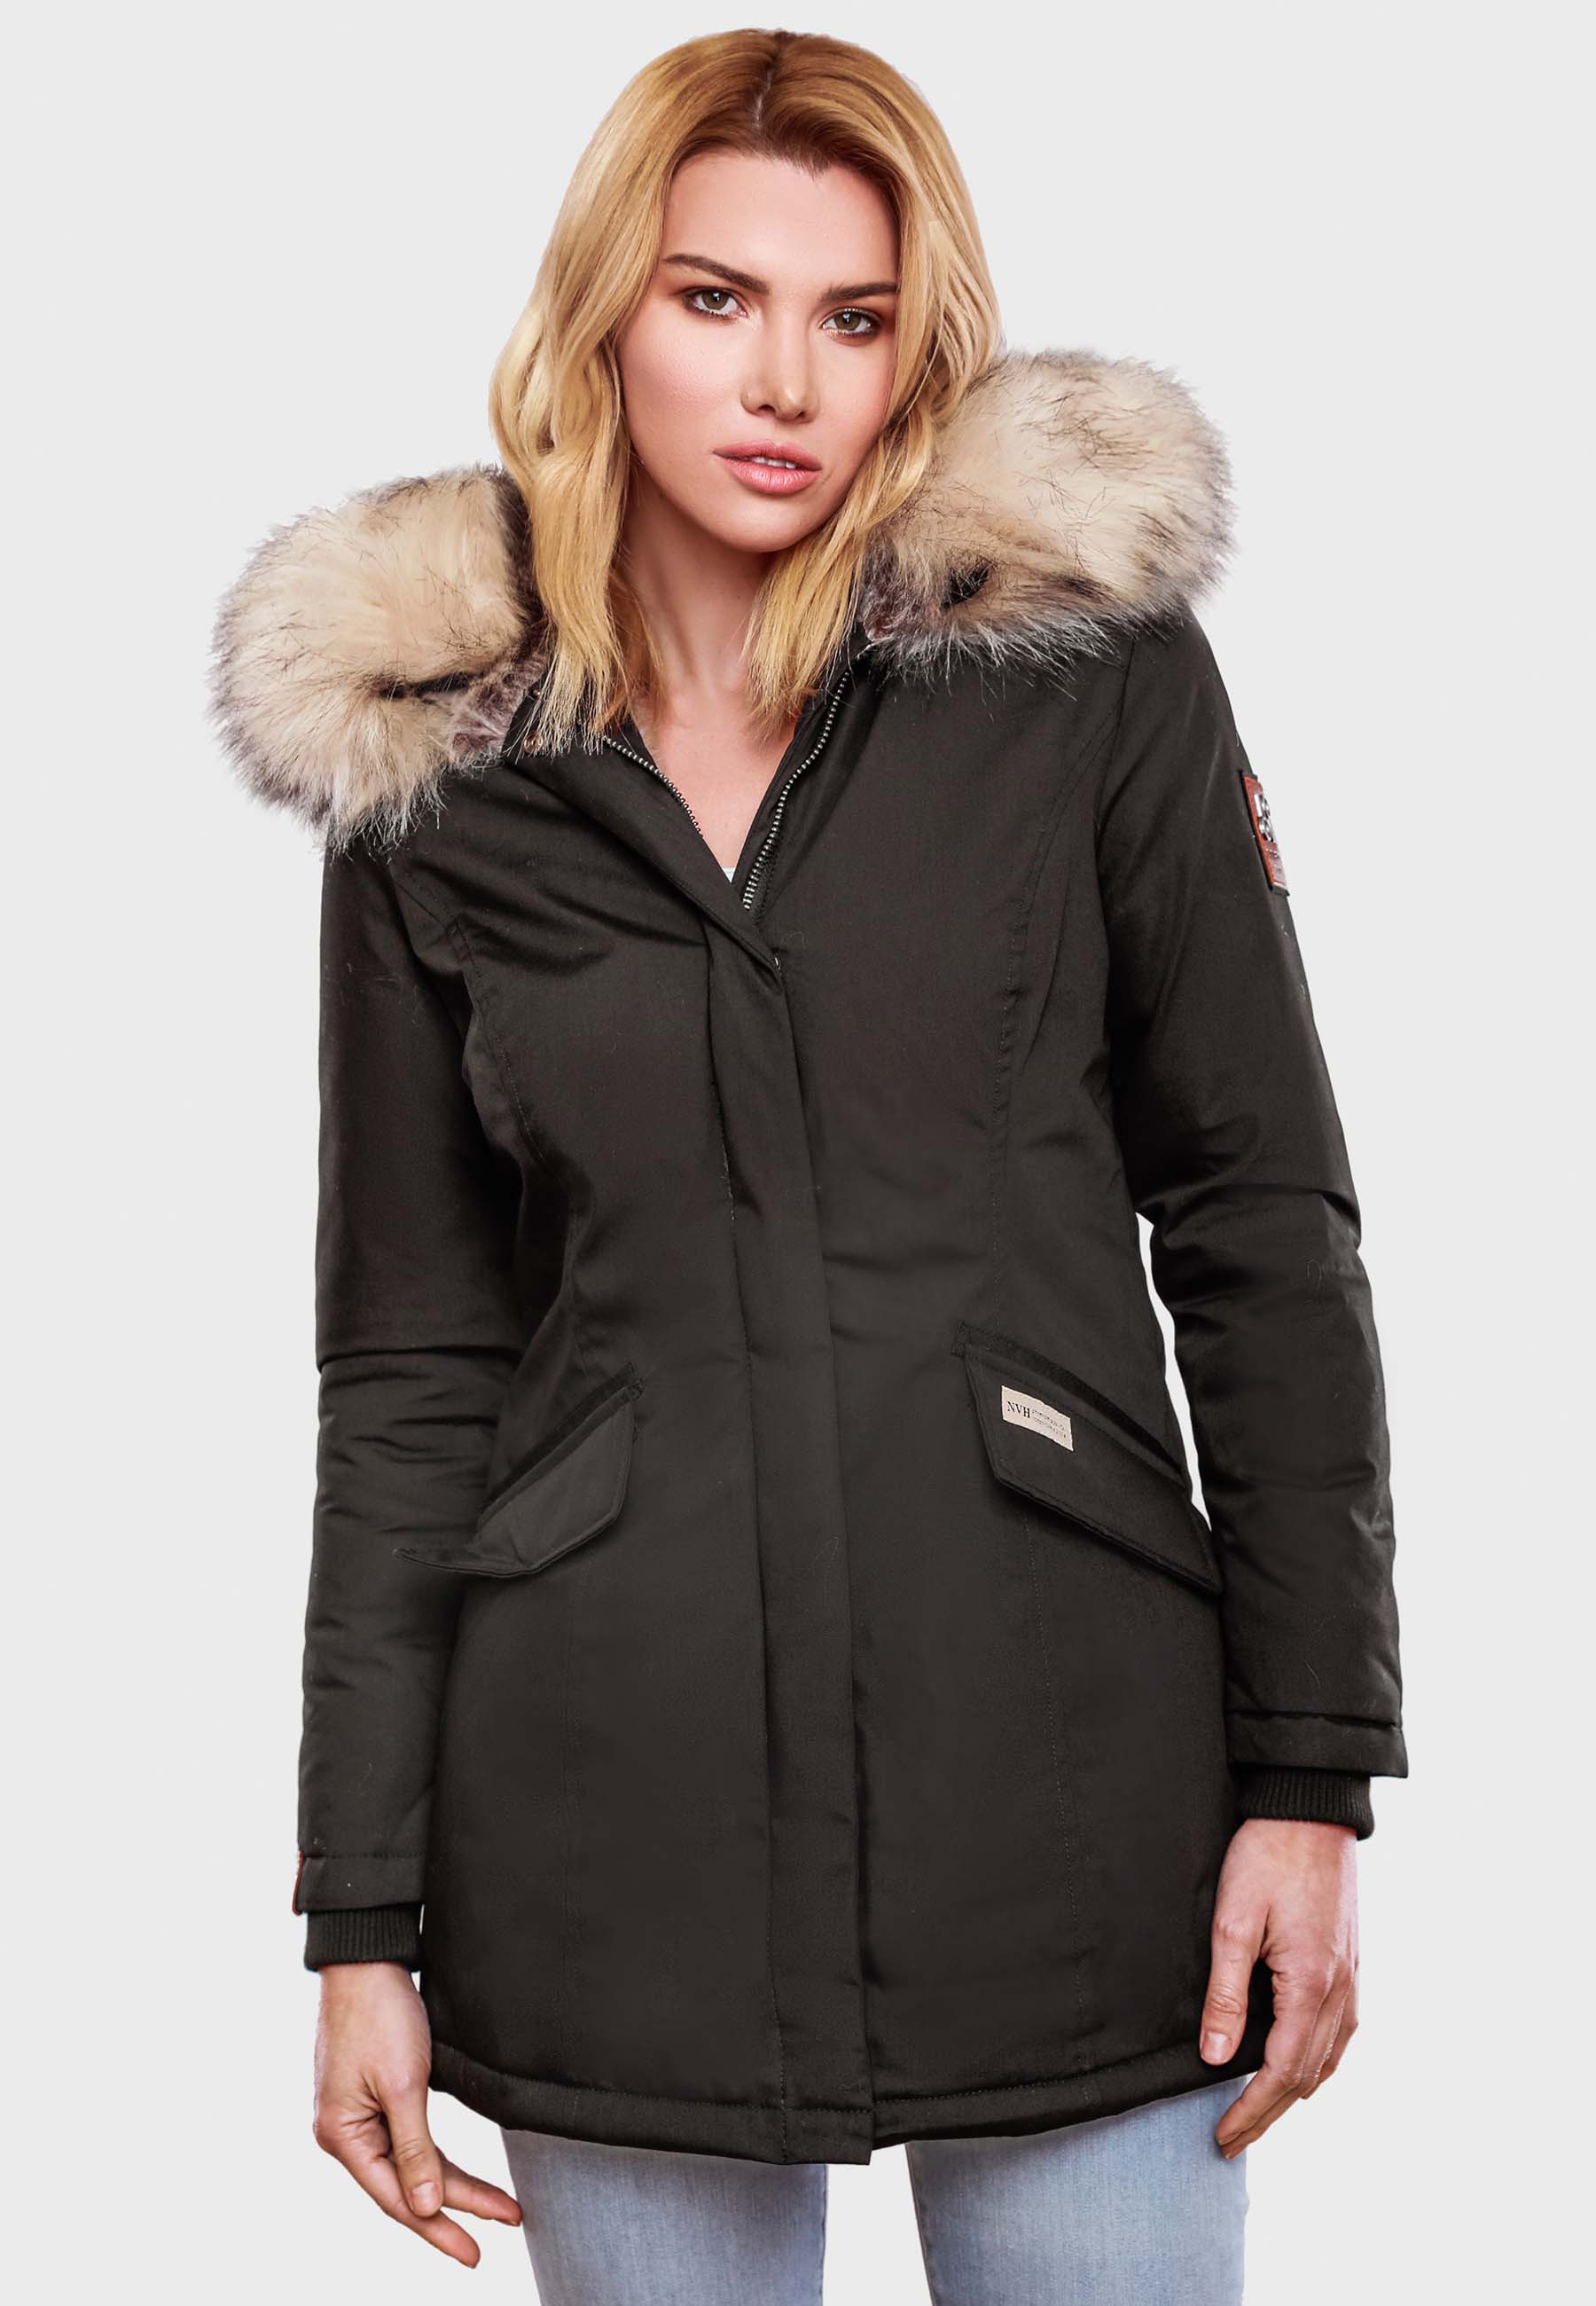 Dámská zimní bunda s kapucí a kožíškem Cristal Navahoo - ANTRACITE Velikost: L